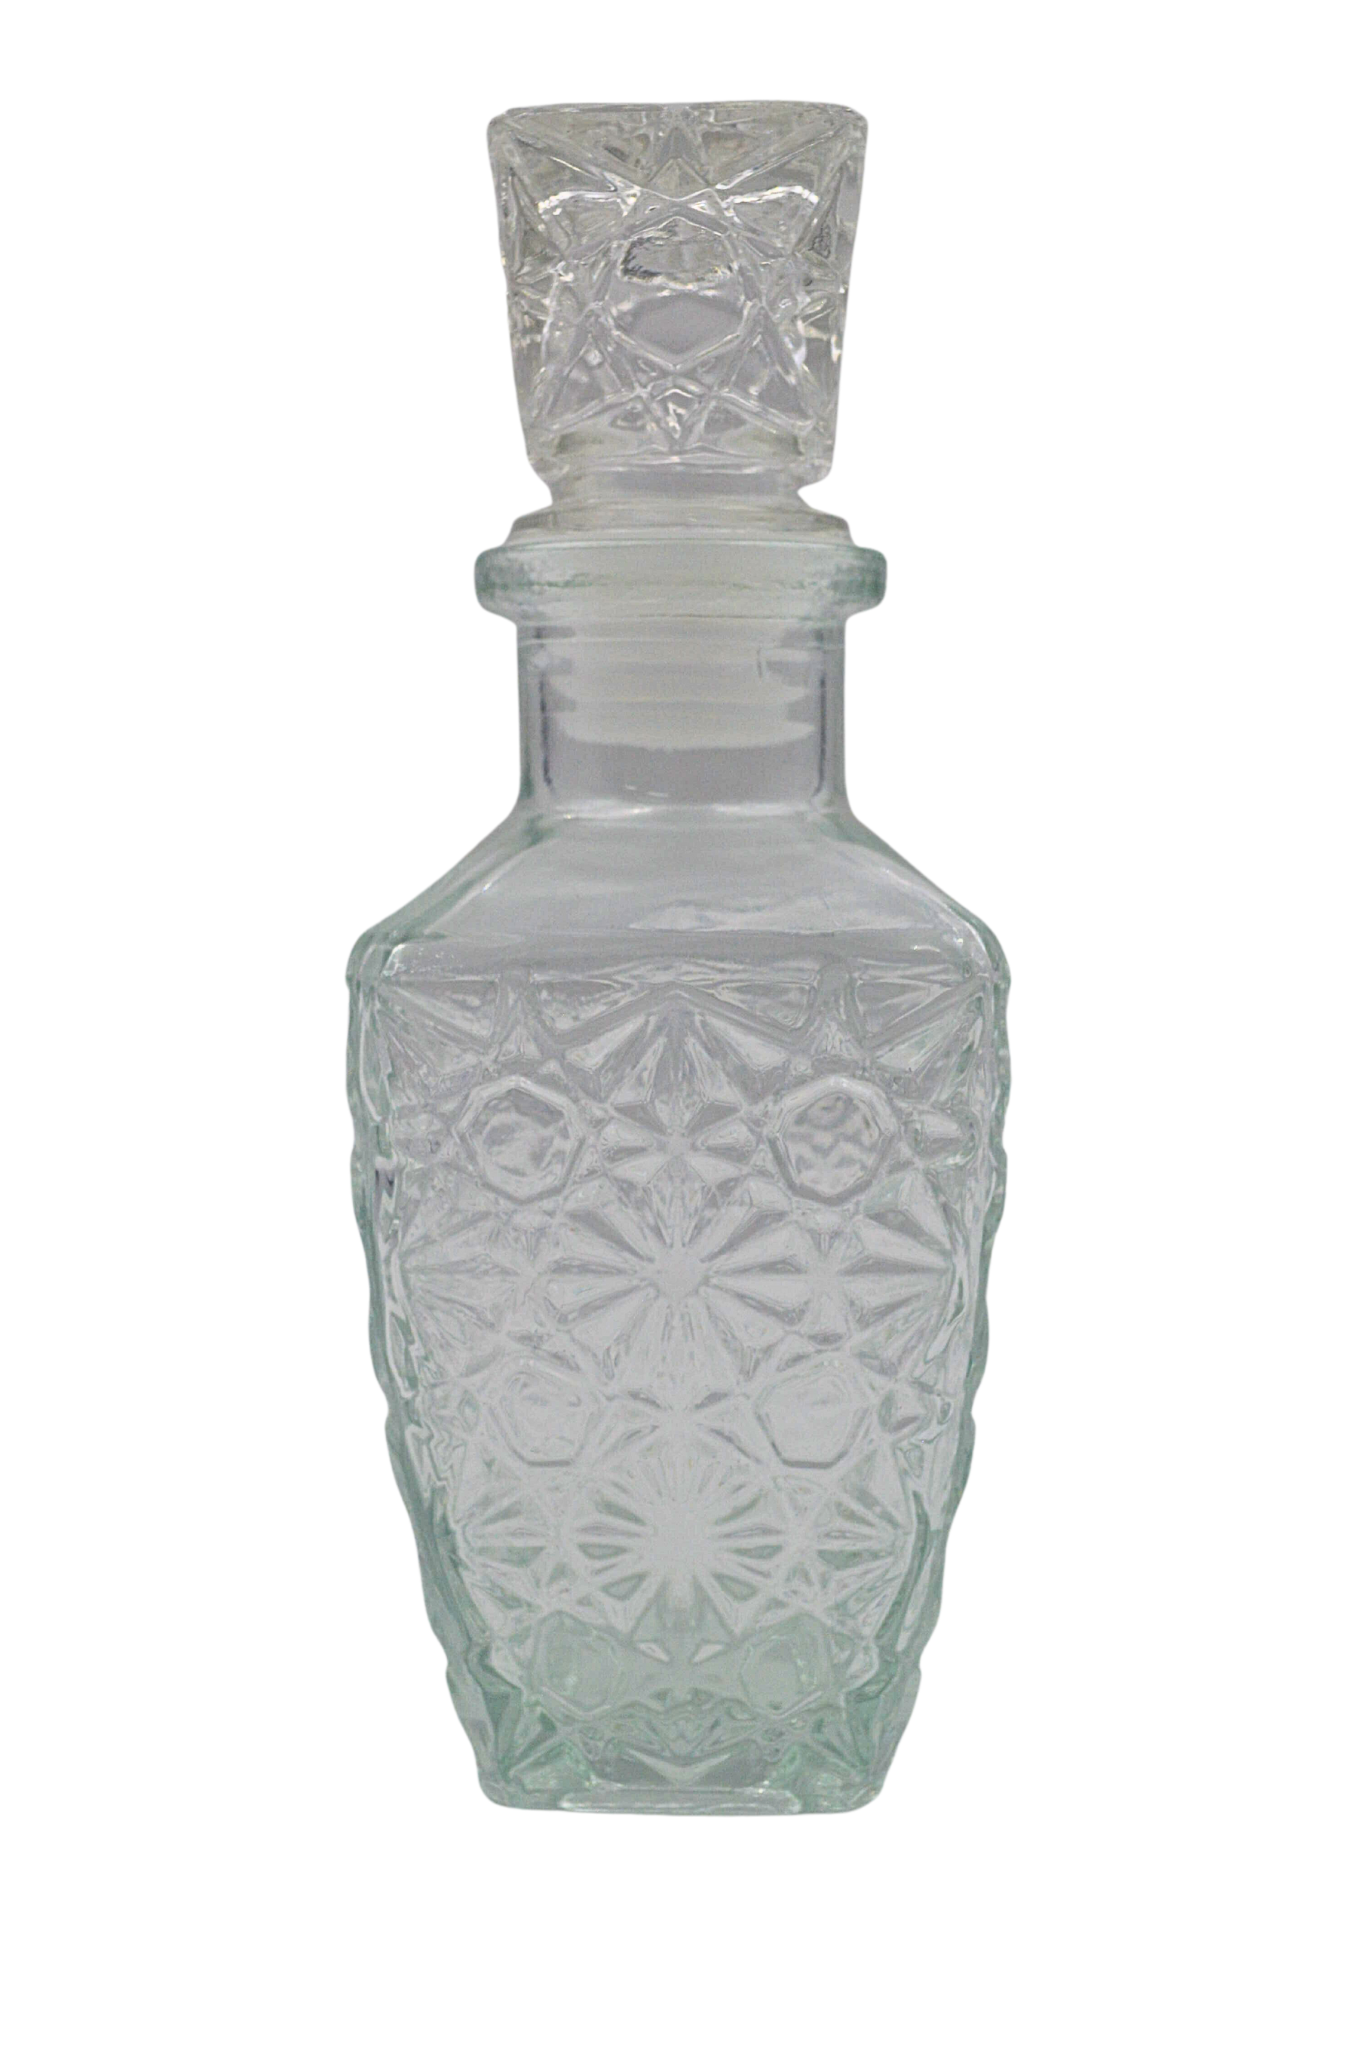 Botella licorera de cristal tallado y cuello de plata.